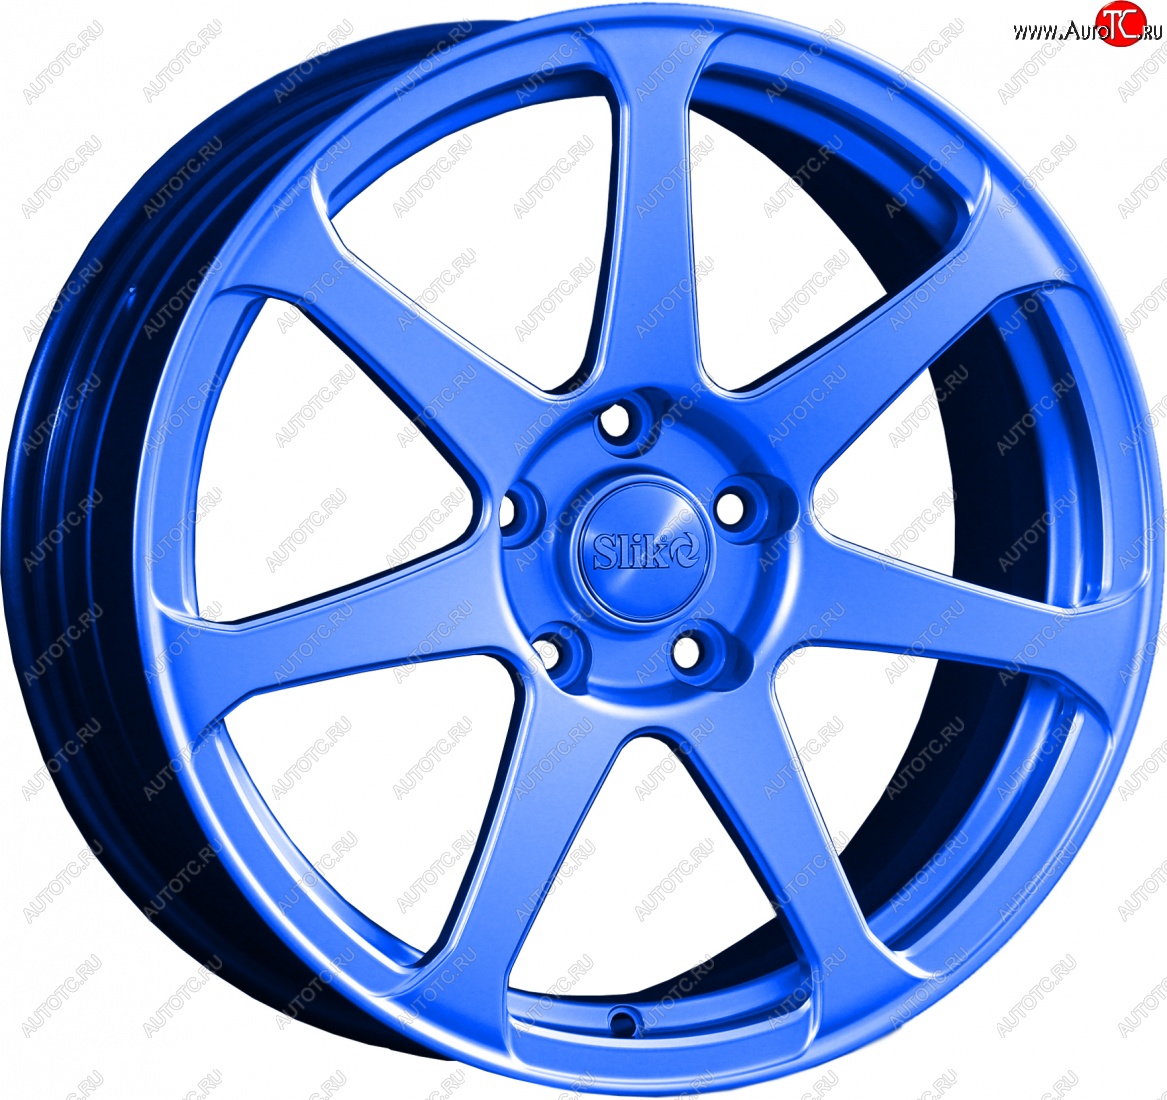 14 499 р. Кованый диск Slik classik R17x7.5 Синий (BLUE) 7.5x17 Chevrolet Malibu 8 (2013-2015) 5x110.0xDIA65.1xET40.0 (Цвет: BLUE)